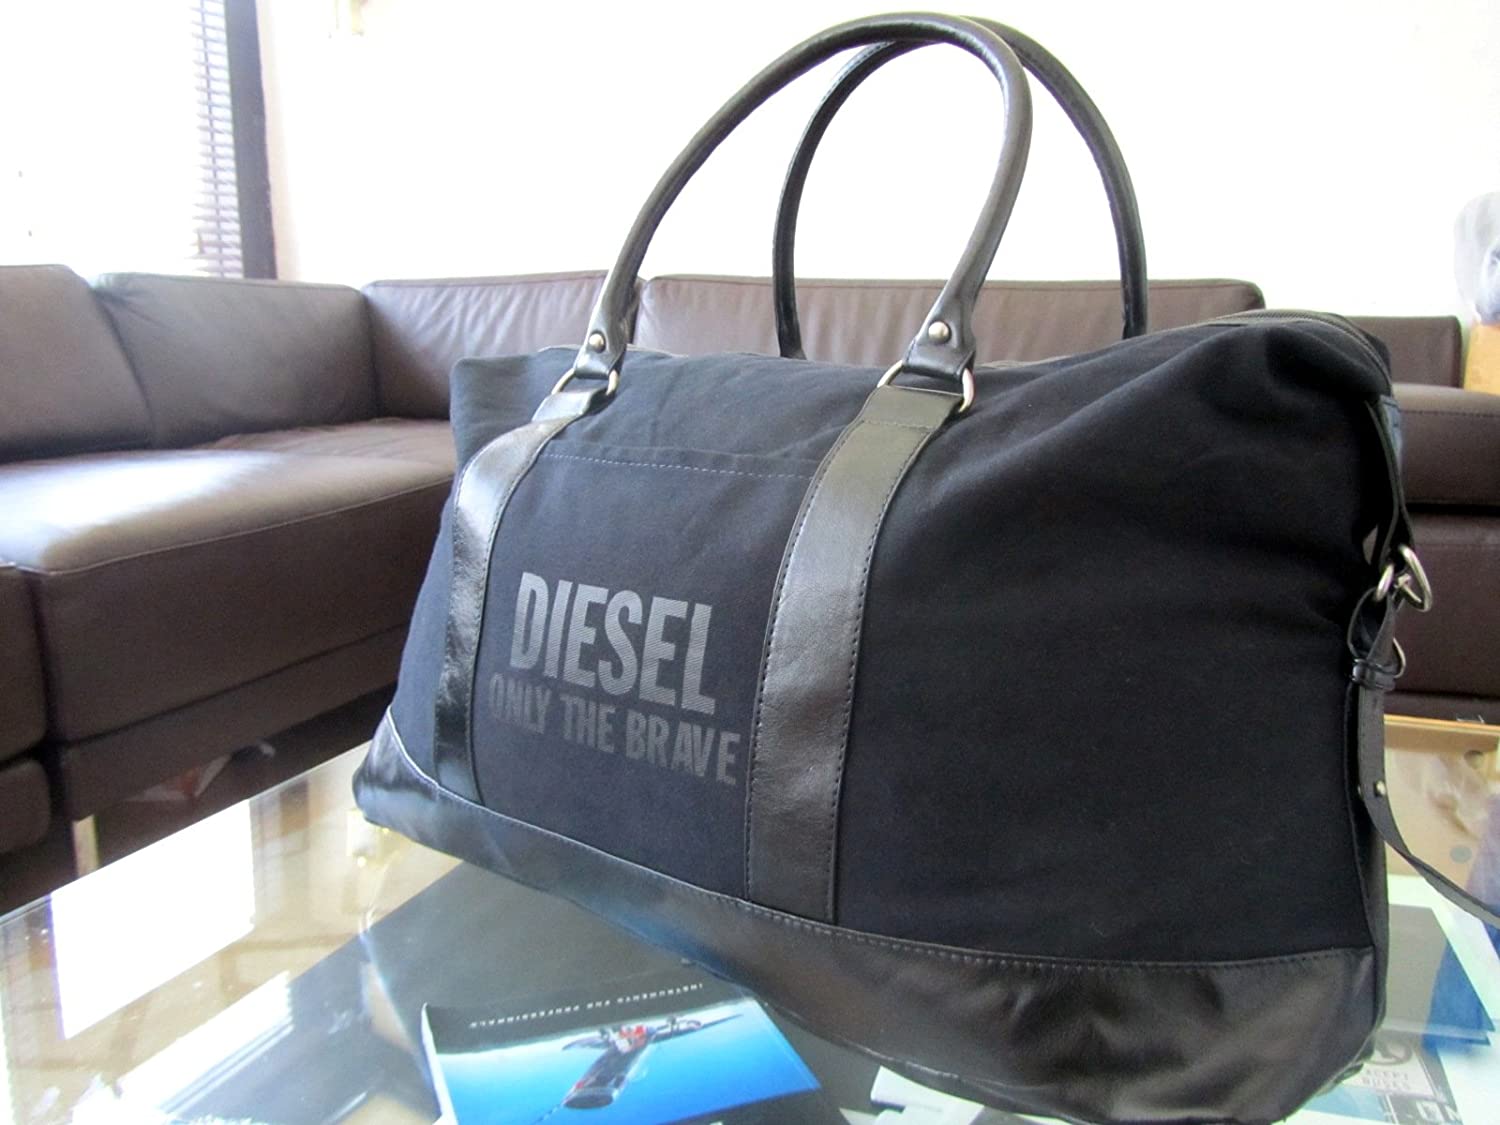 Diesel Only the Brave Week End Bag GWP - samawa perfumes 